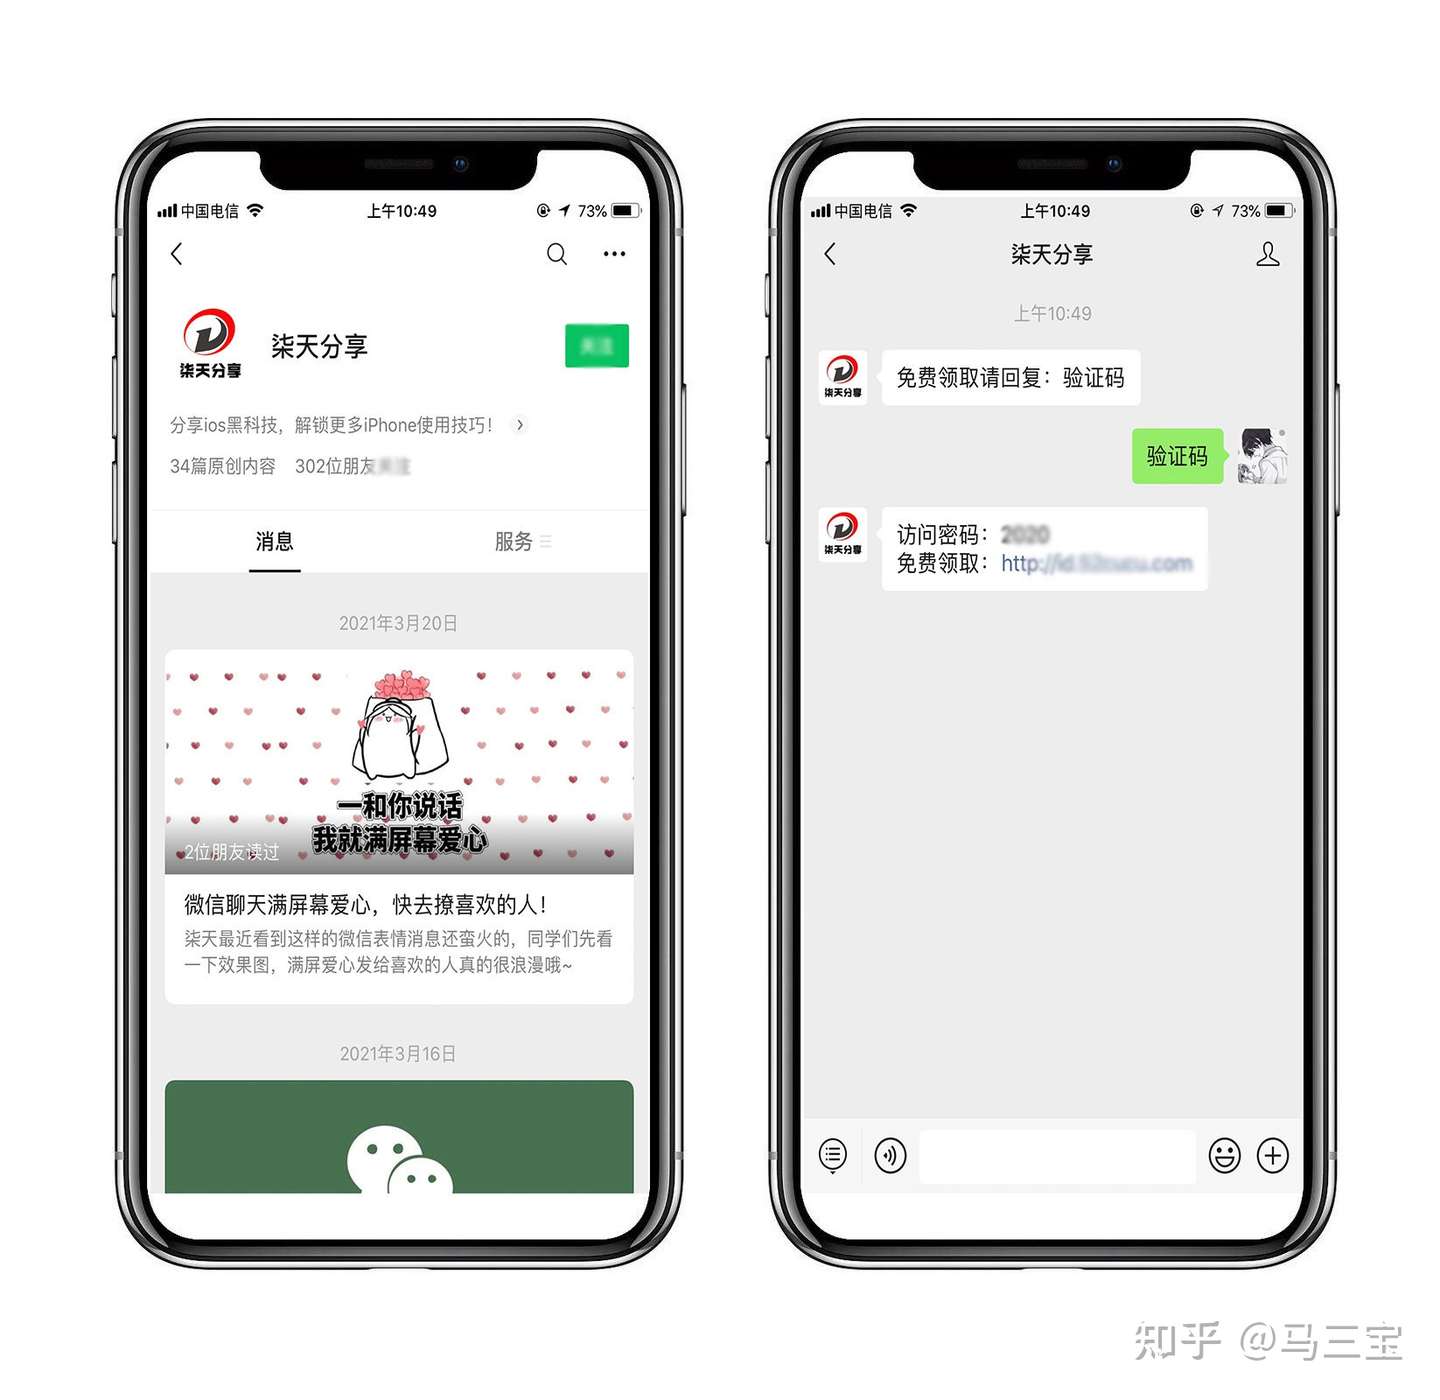 21免费的苹果台湾id 公共免费台湾苹果账号密码 0 最新可用 知乎